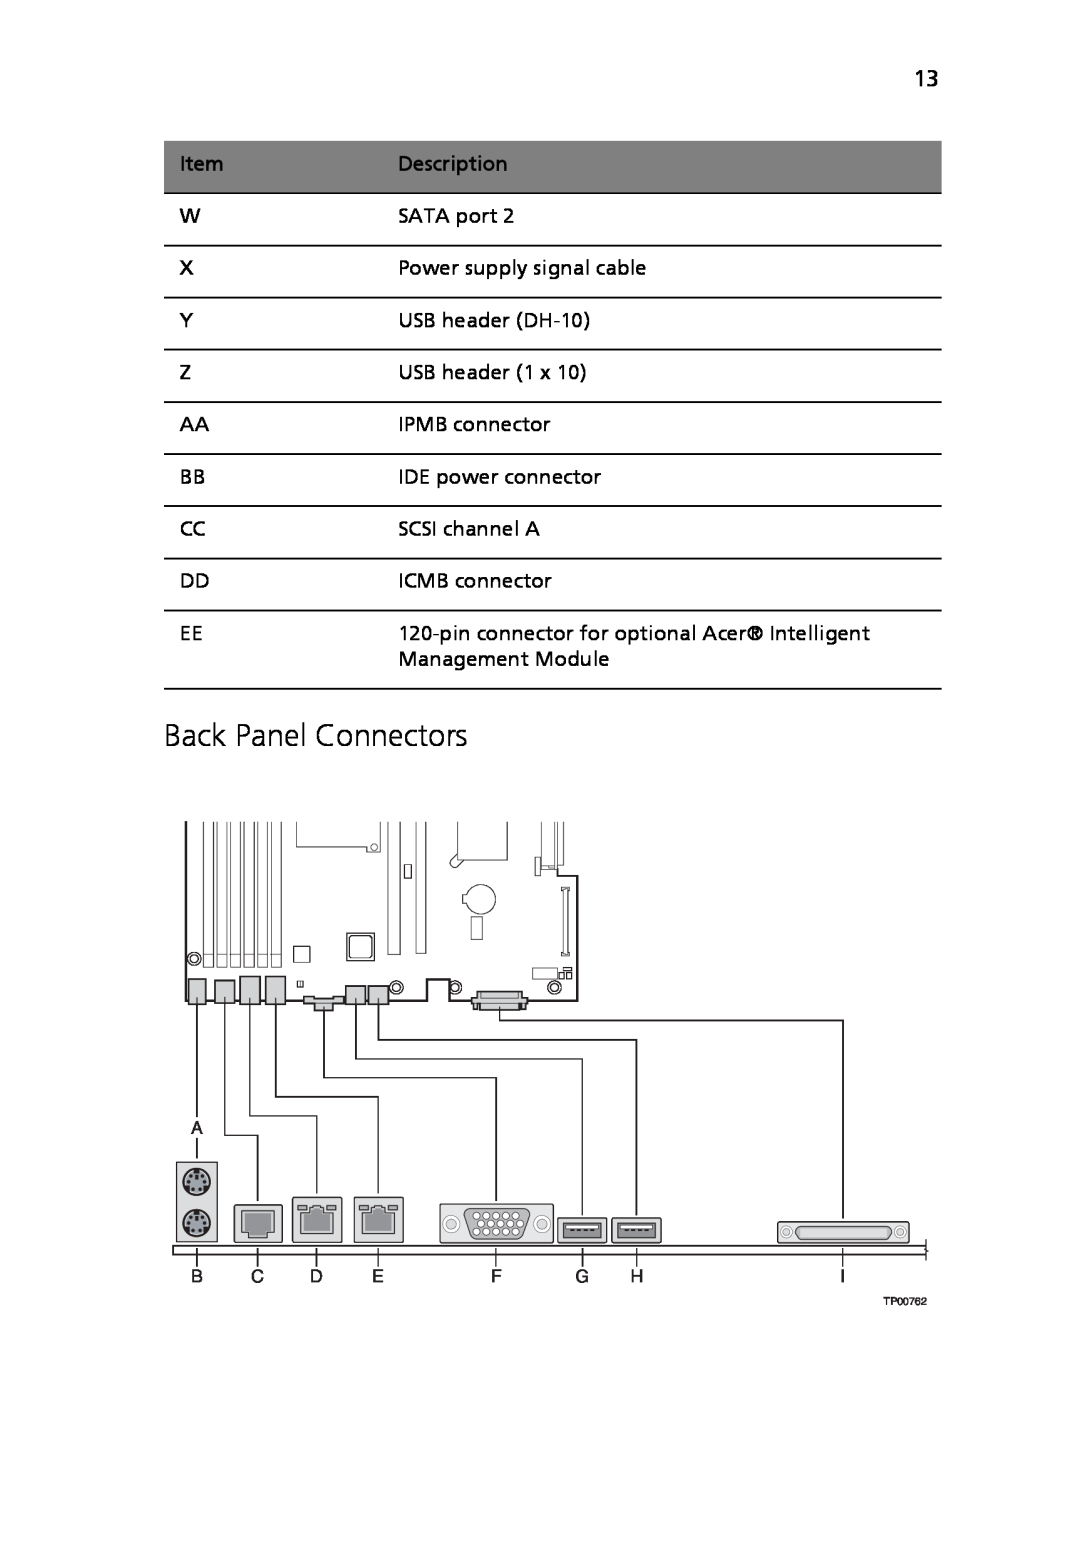 Acer Altos R710 manual Back Panel Connectors, A B C D E F G Hi 